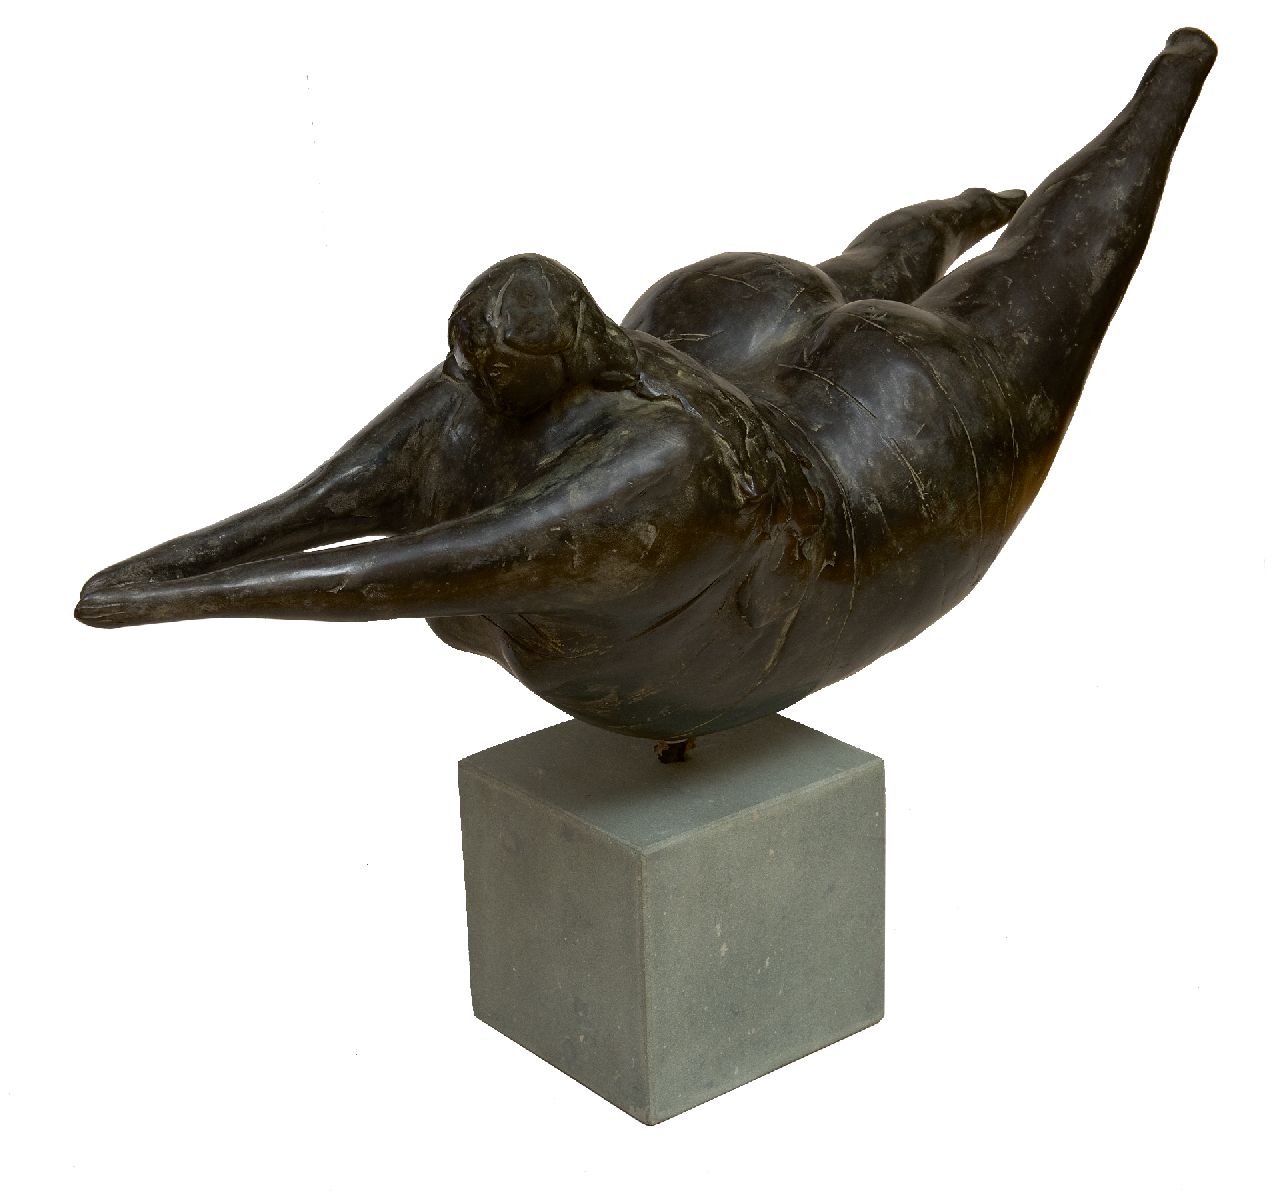 Hemert E. van | Evert van Hemert, The big splash, patinated bronze 30.0 x 80.0 cm, gesigneerd volgt! and executed in 2008